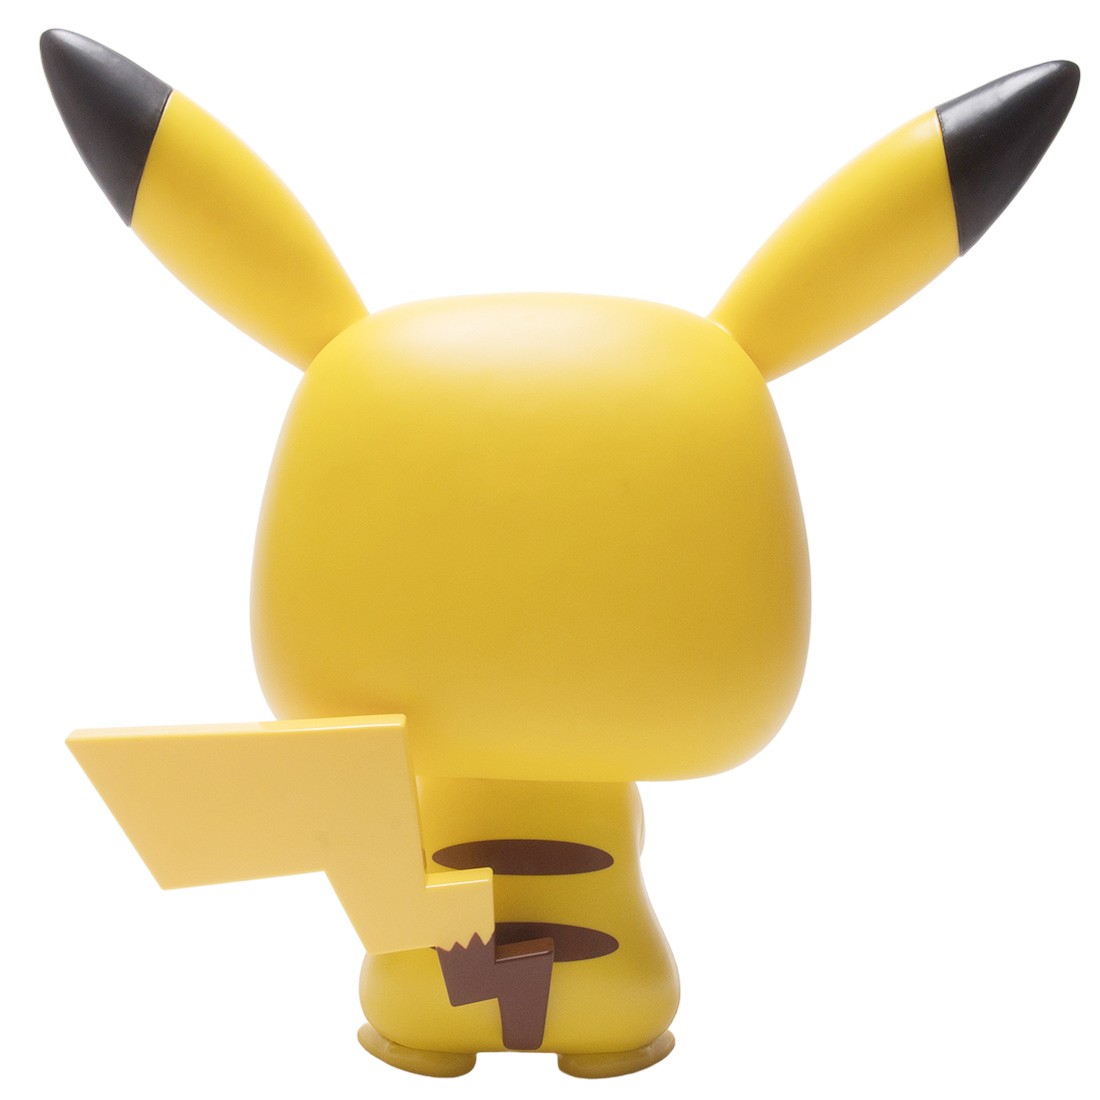 Funko POP! Games: Pokemon Pikachu 18-in Vinyl Figure